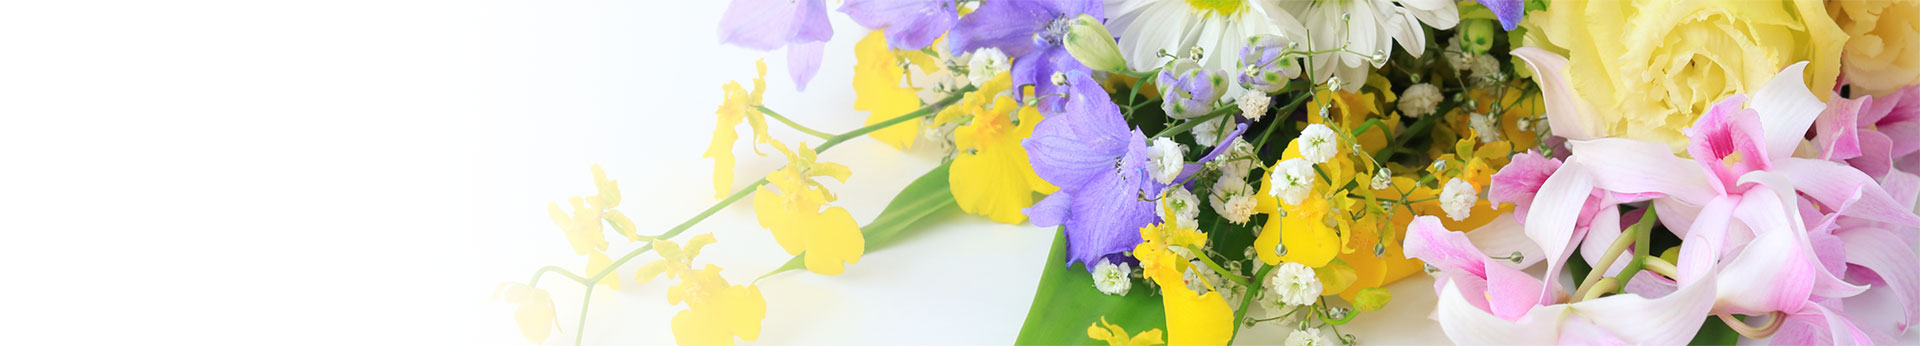 カラフルな花々があしらわれた花束を背景にしたその他の葬儀ページのトップバナー